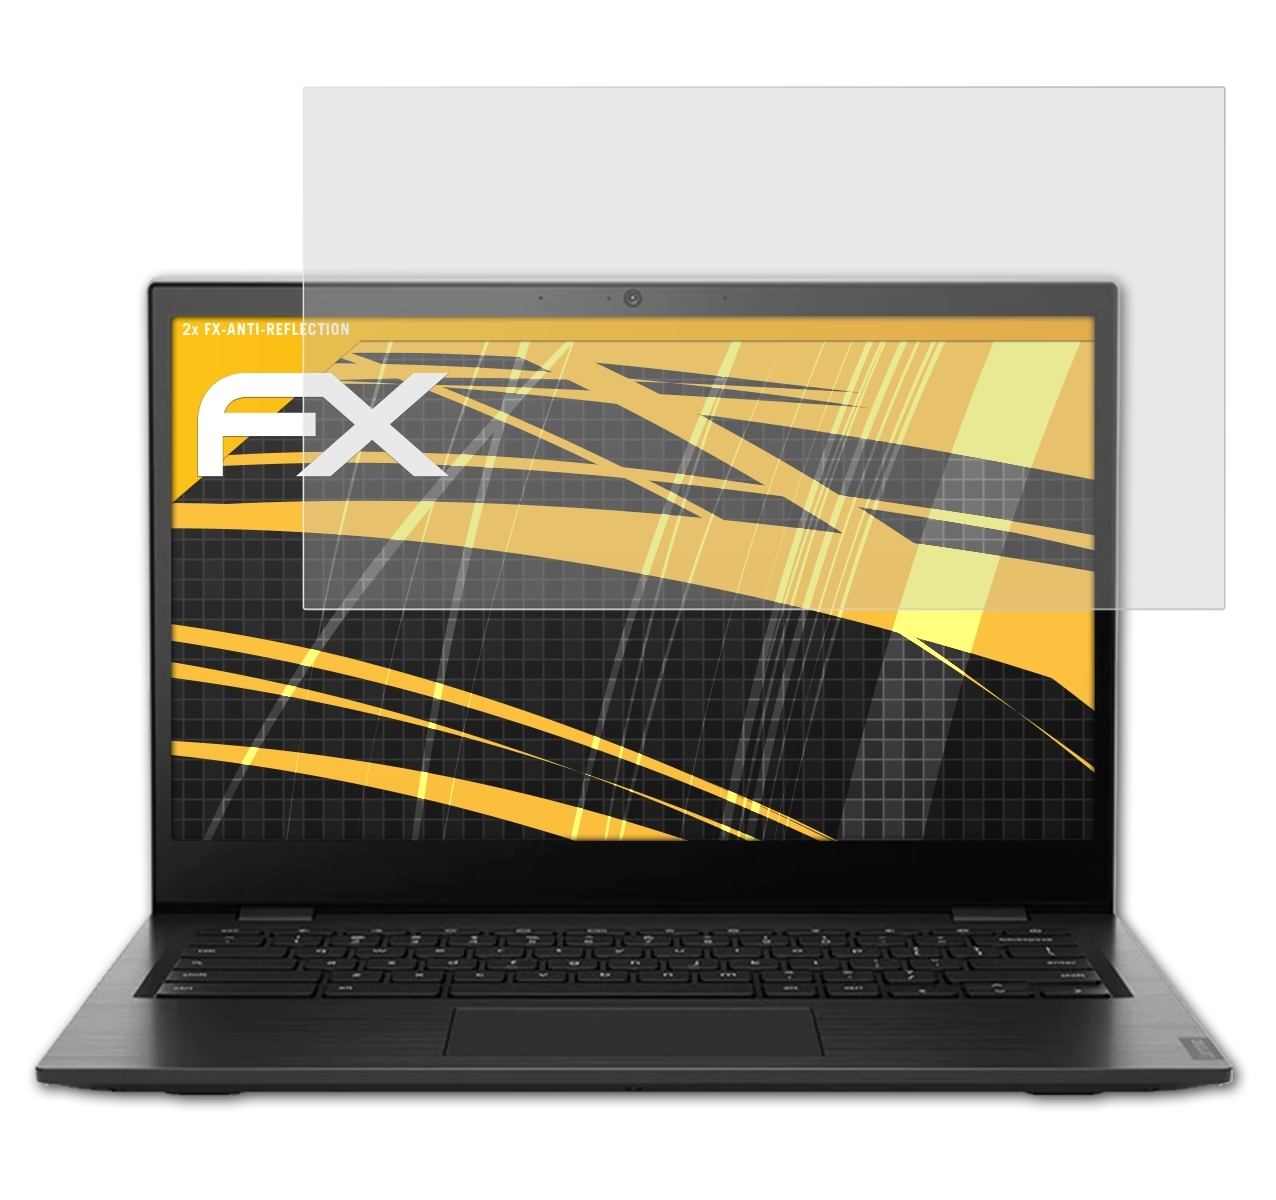 ATFOLIX 2x Lenovo FX-Antireflex Displayschutz(für 14e Chromebook)